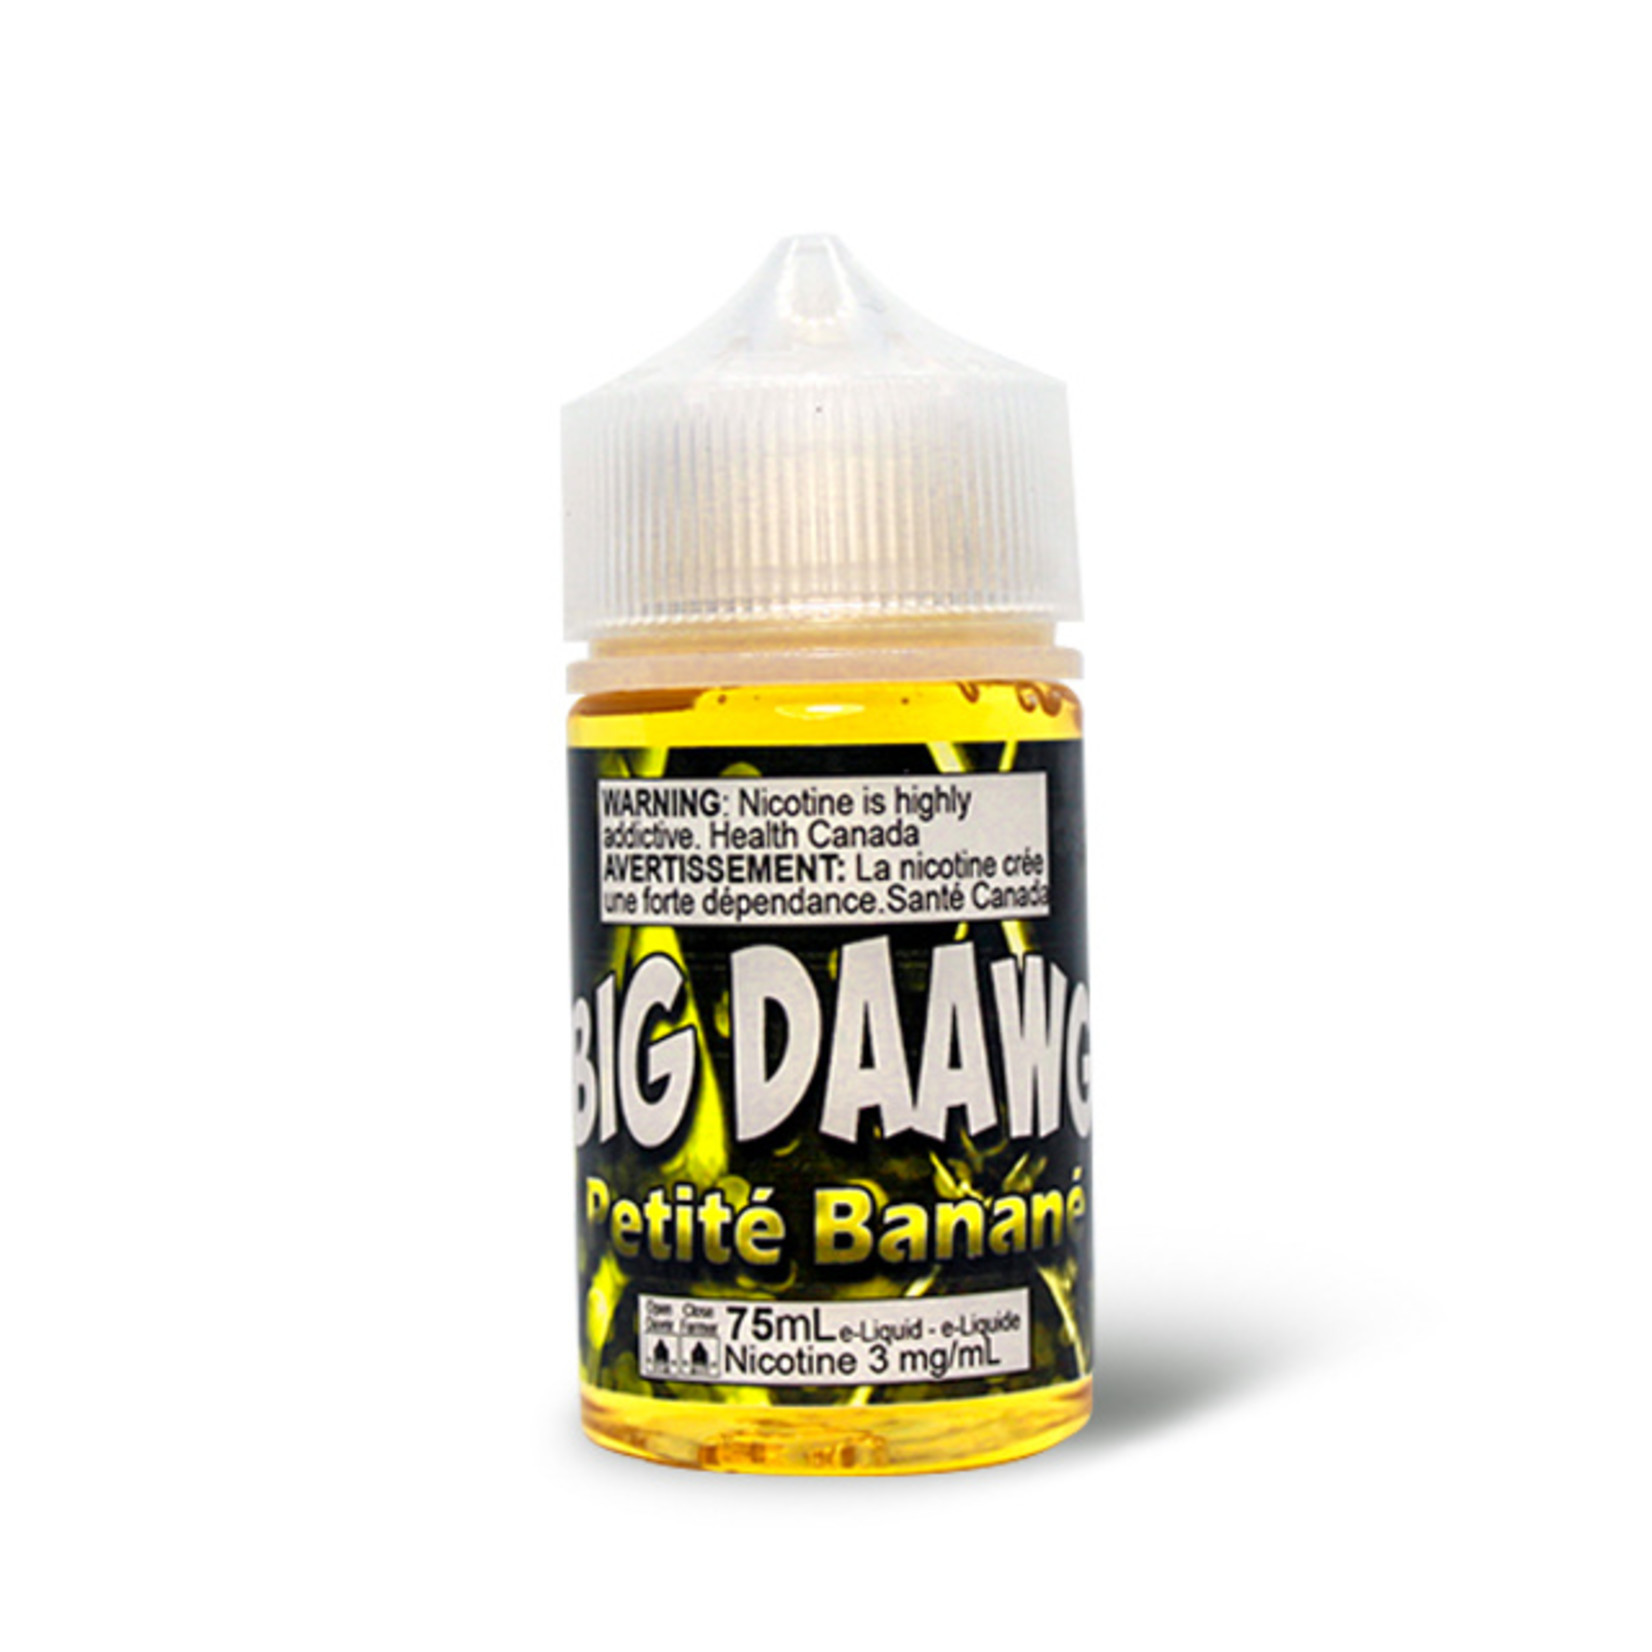 TDaawg - Big Daawg Petite Banane